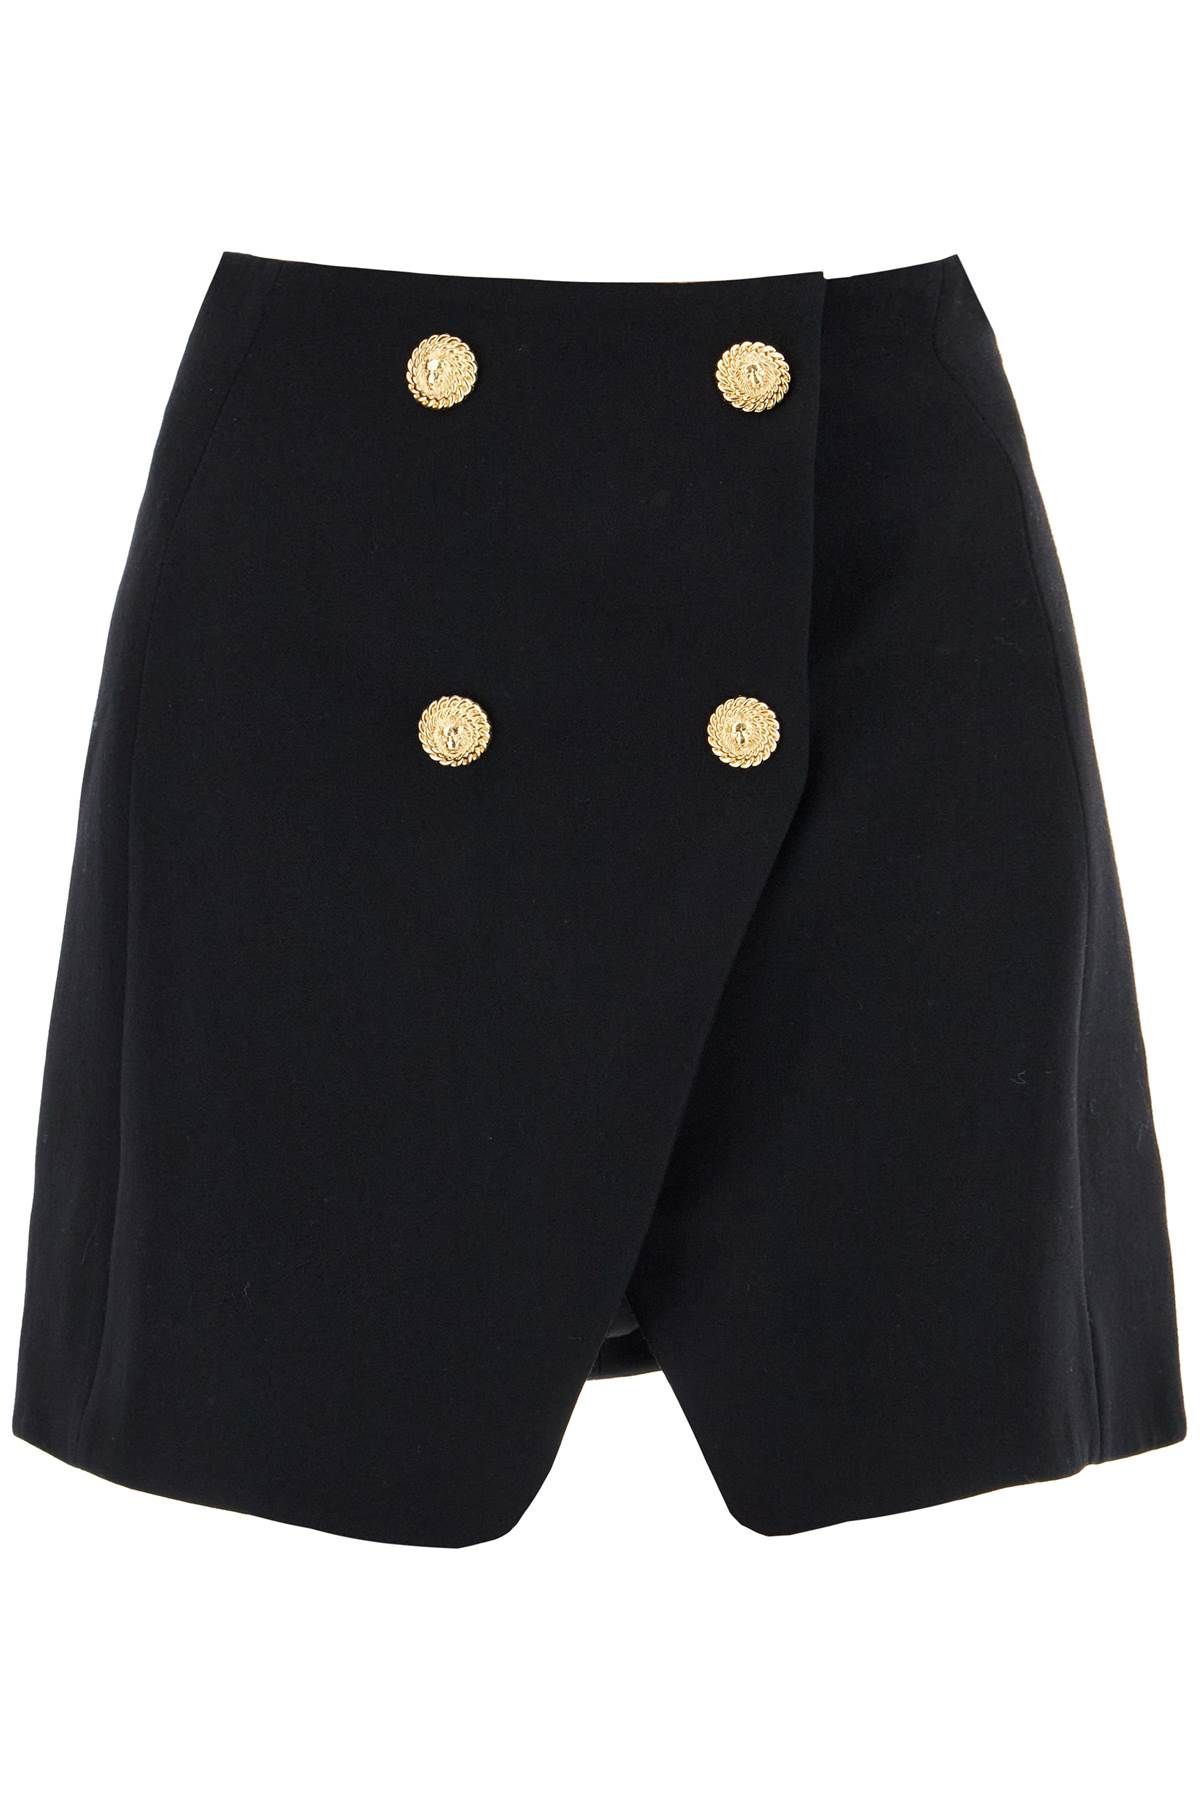 Balmain BALMAIN "mini skirt in grain de p